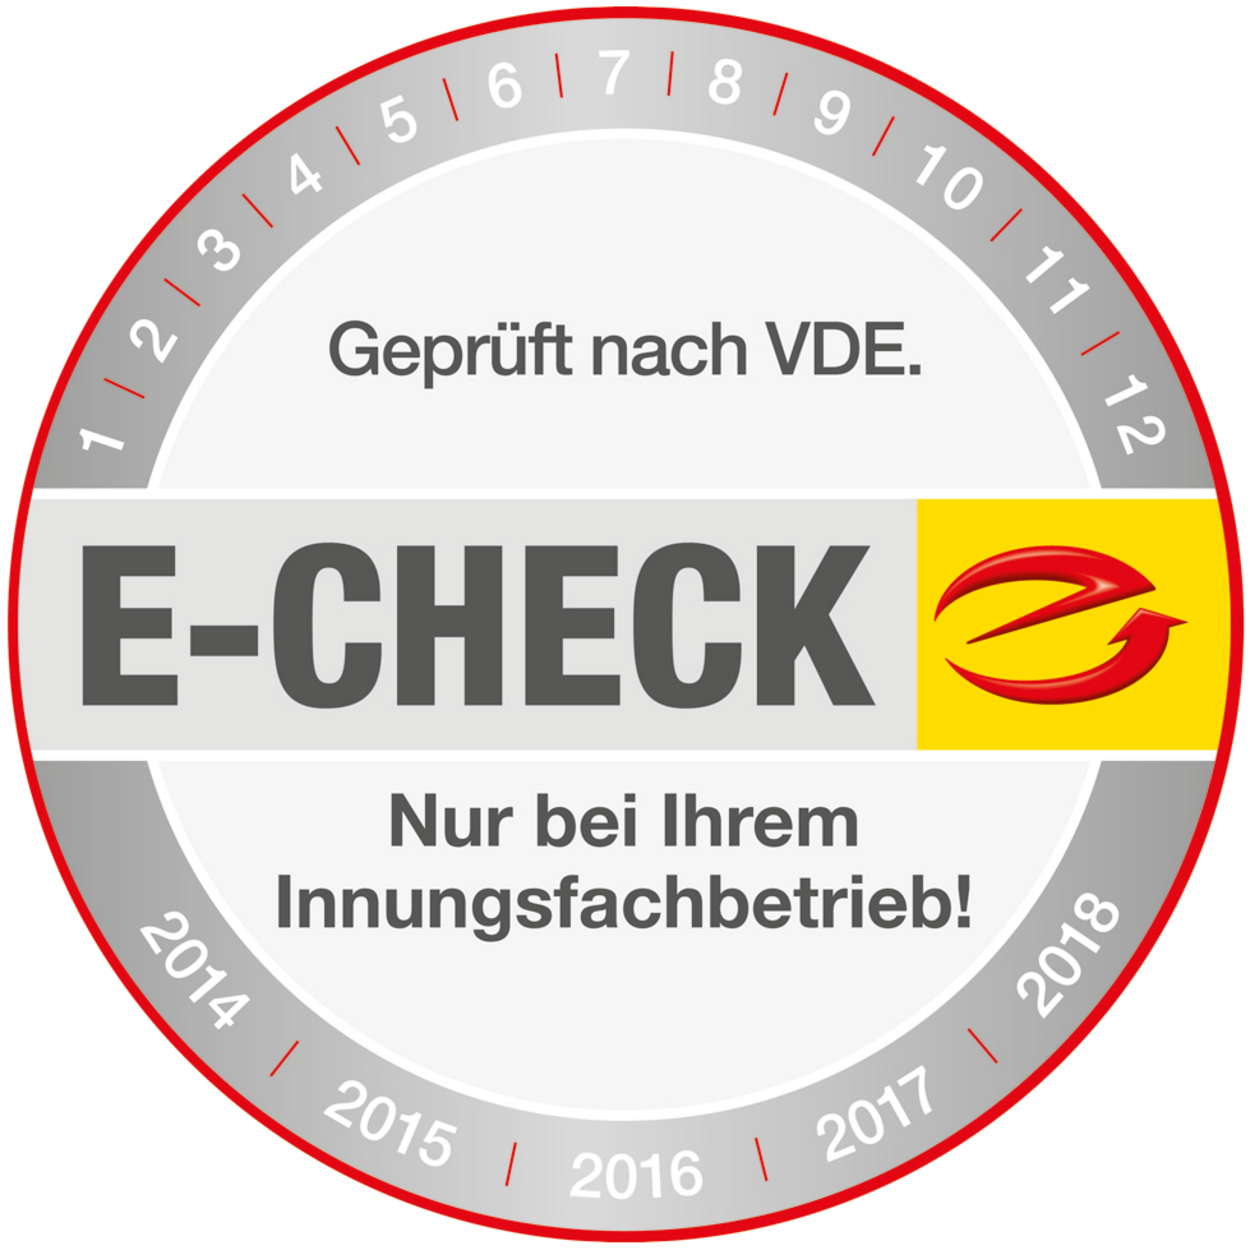 Der E-Check bei Elektro Klube GmbH in Weißenfels